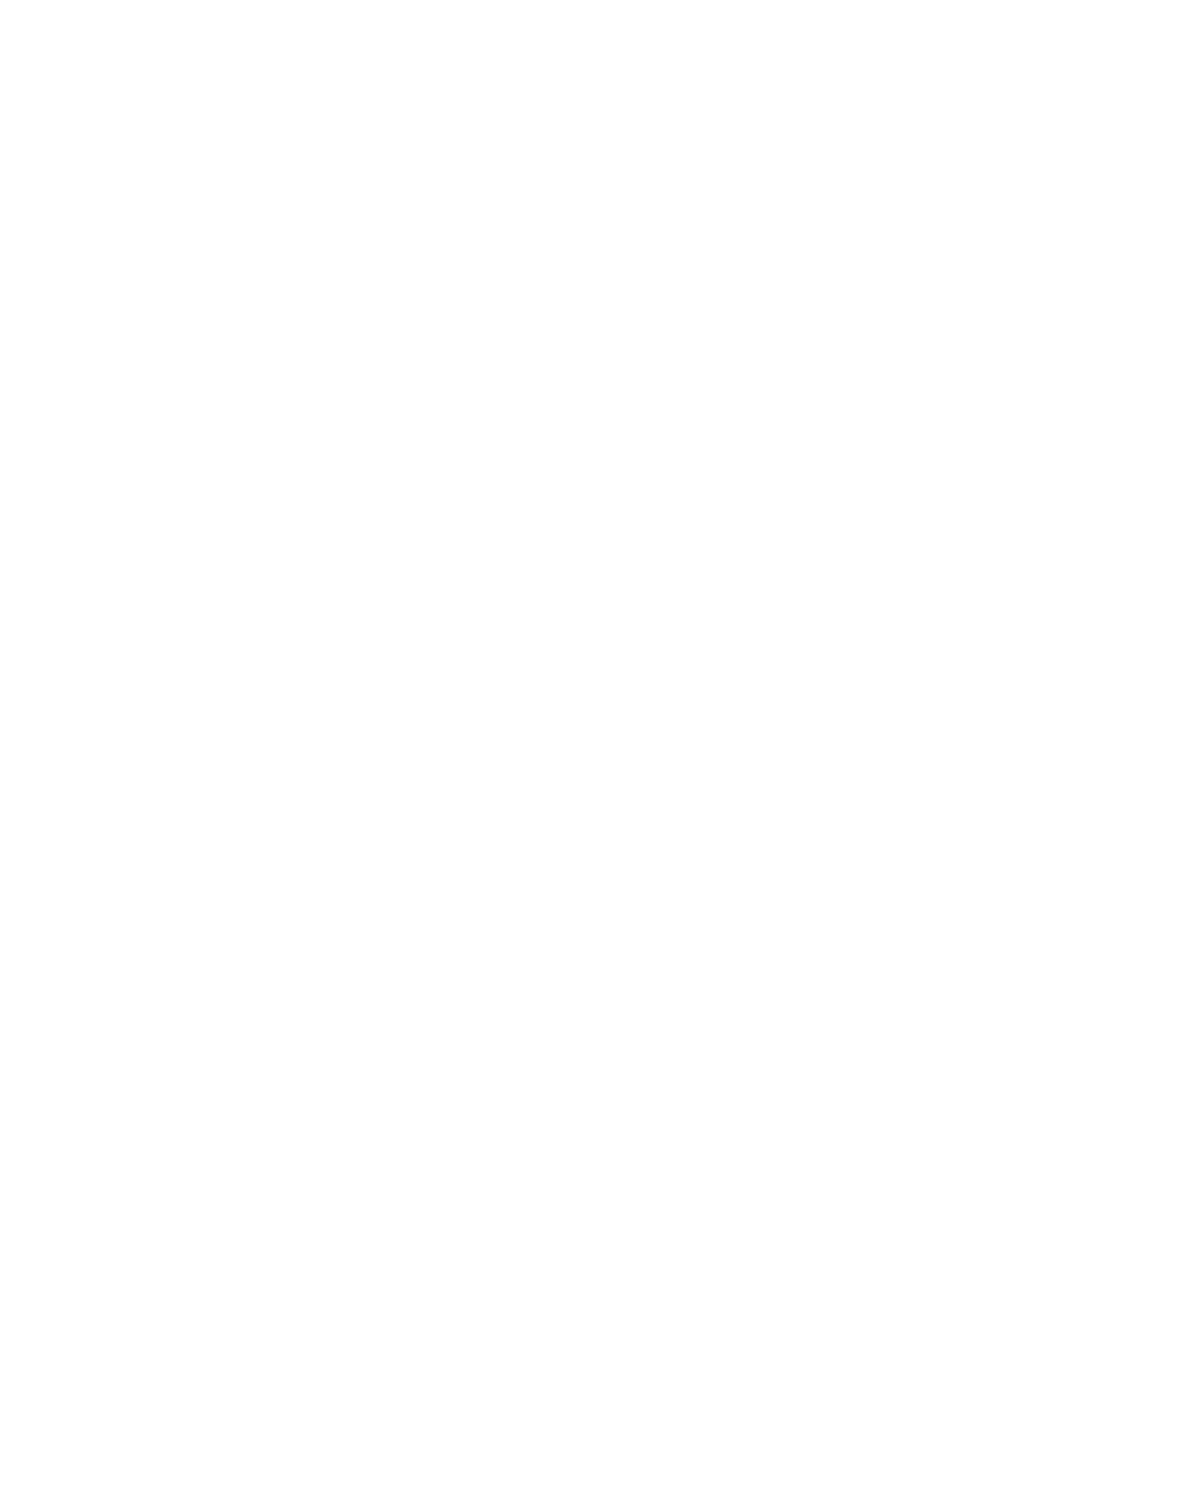 Newport News Restaurant Week